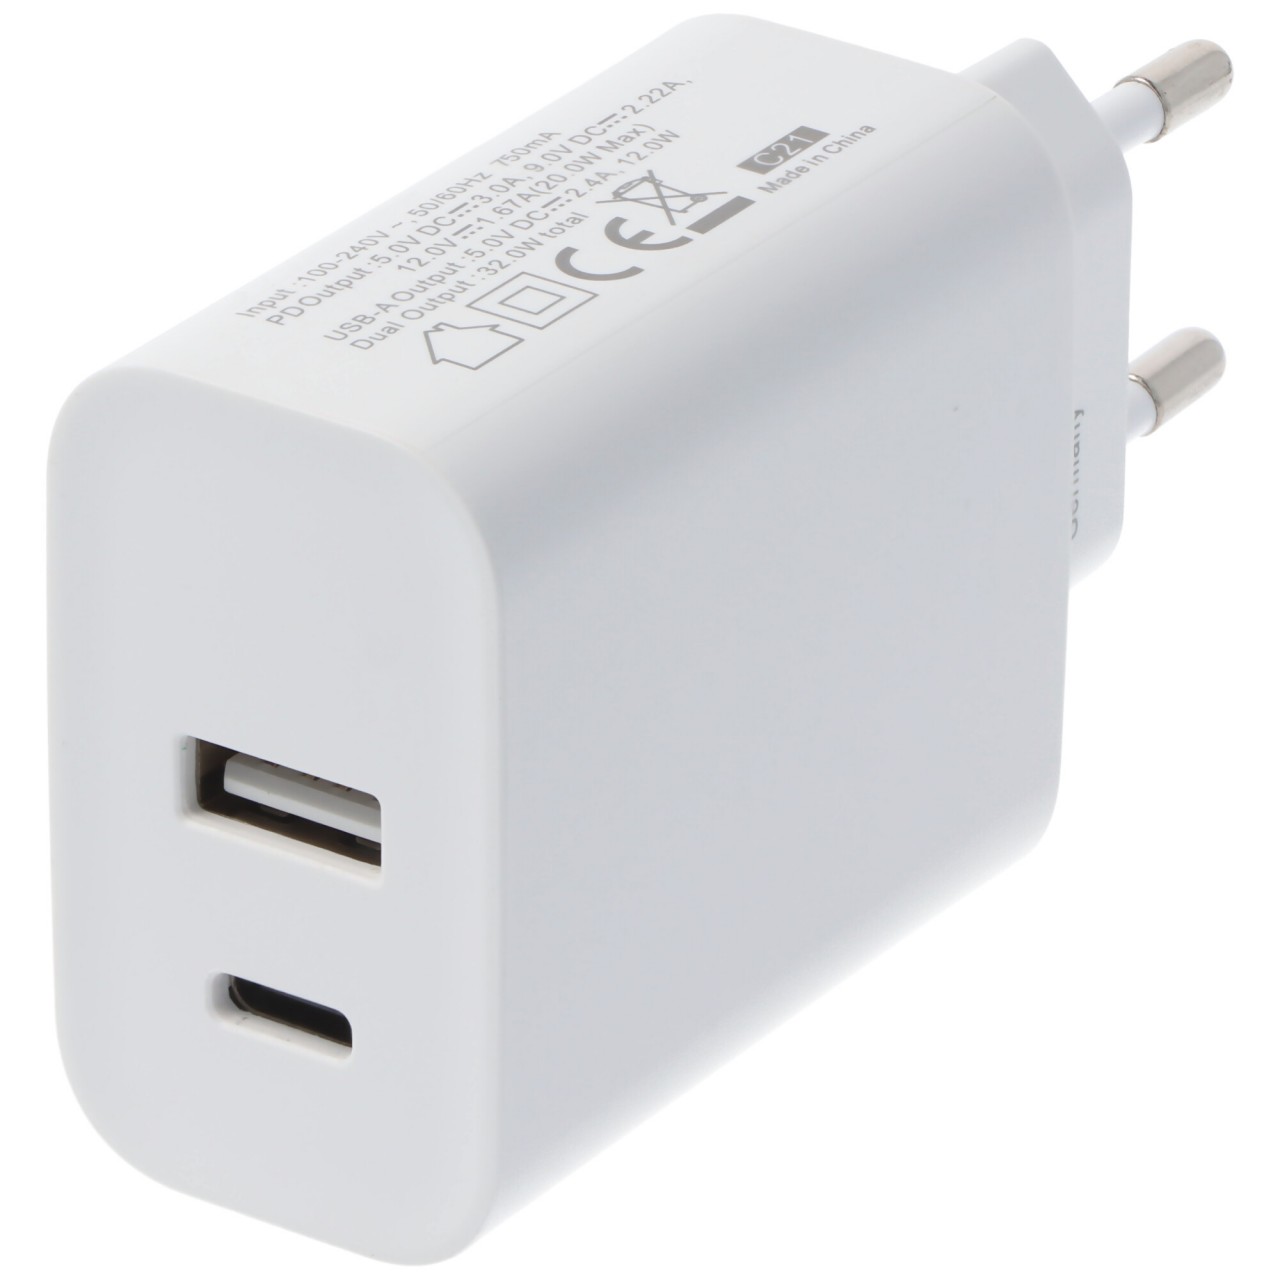 Dual-USB Schnellladegerät USB QC3.0 28W weiß, lädt bis zu 4x schneller als Standard USB-Ladegeräte